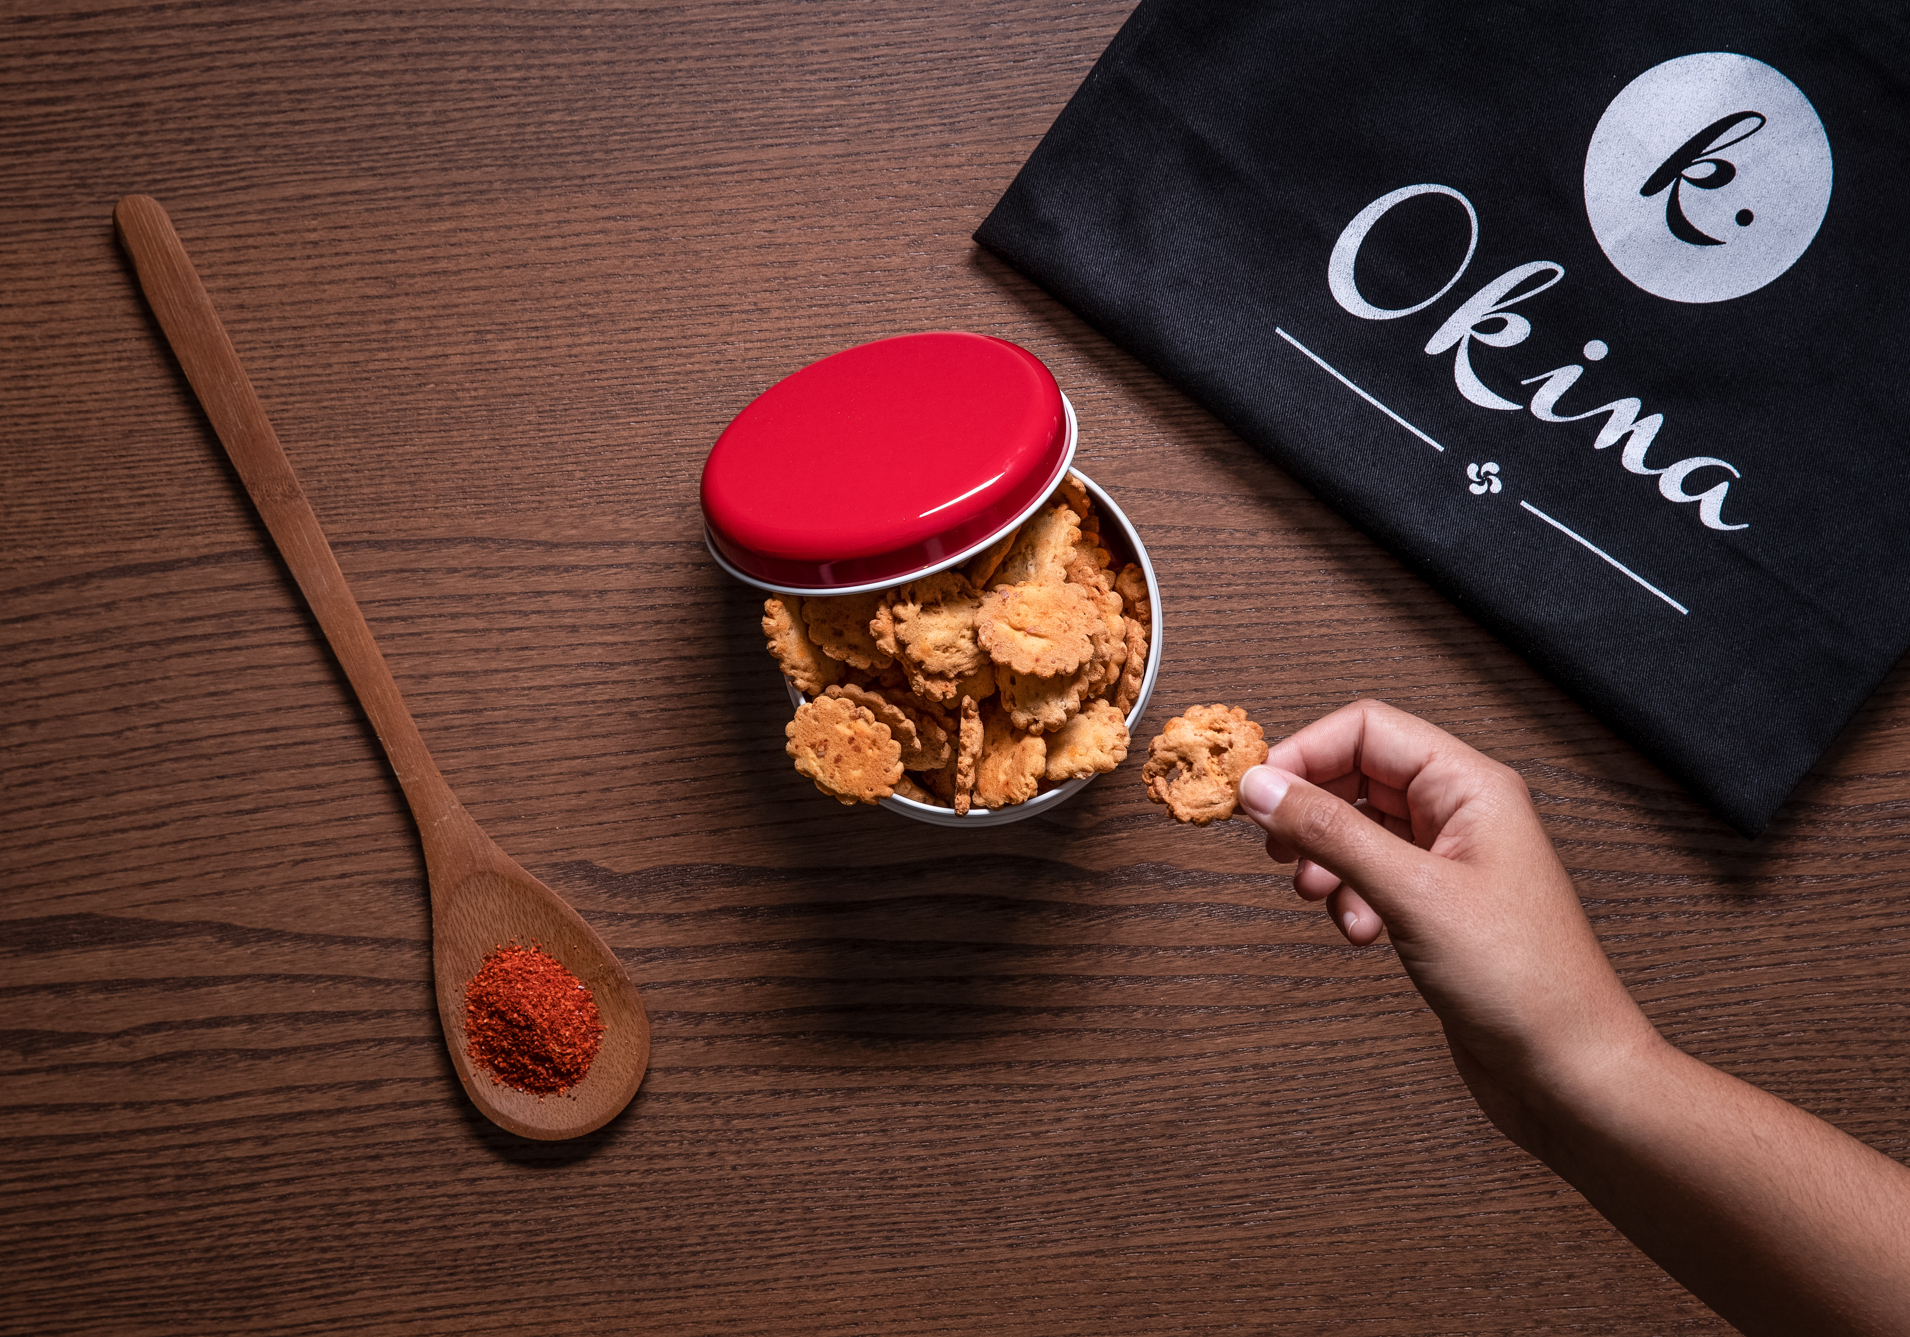 Mise en scéne photo d'un biscuit au piment d'Espelette de la marque Okina pour leur communication nationale.